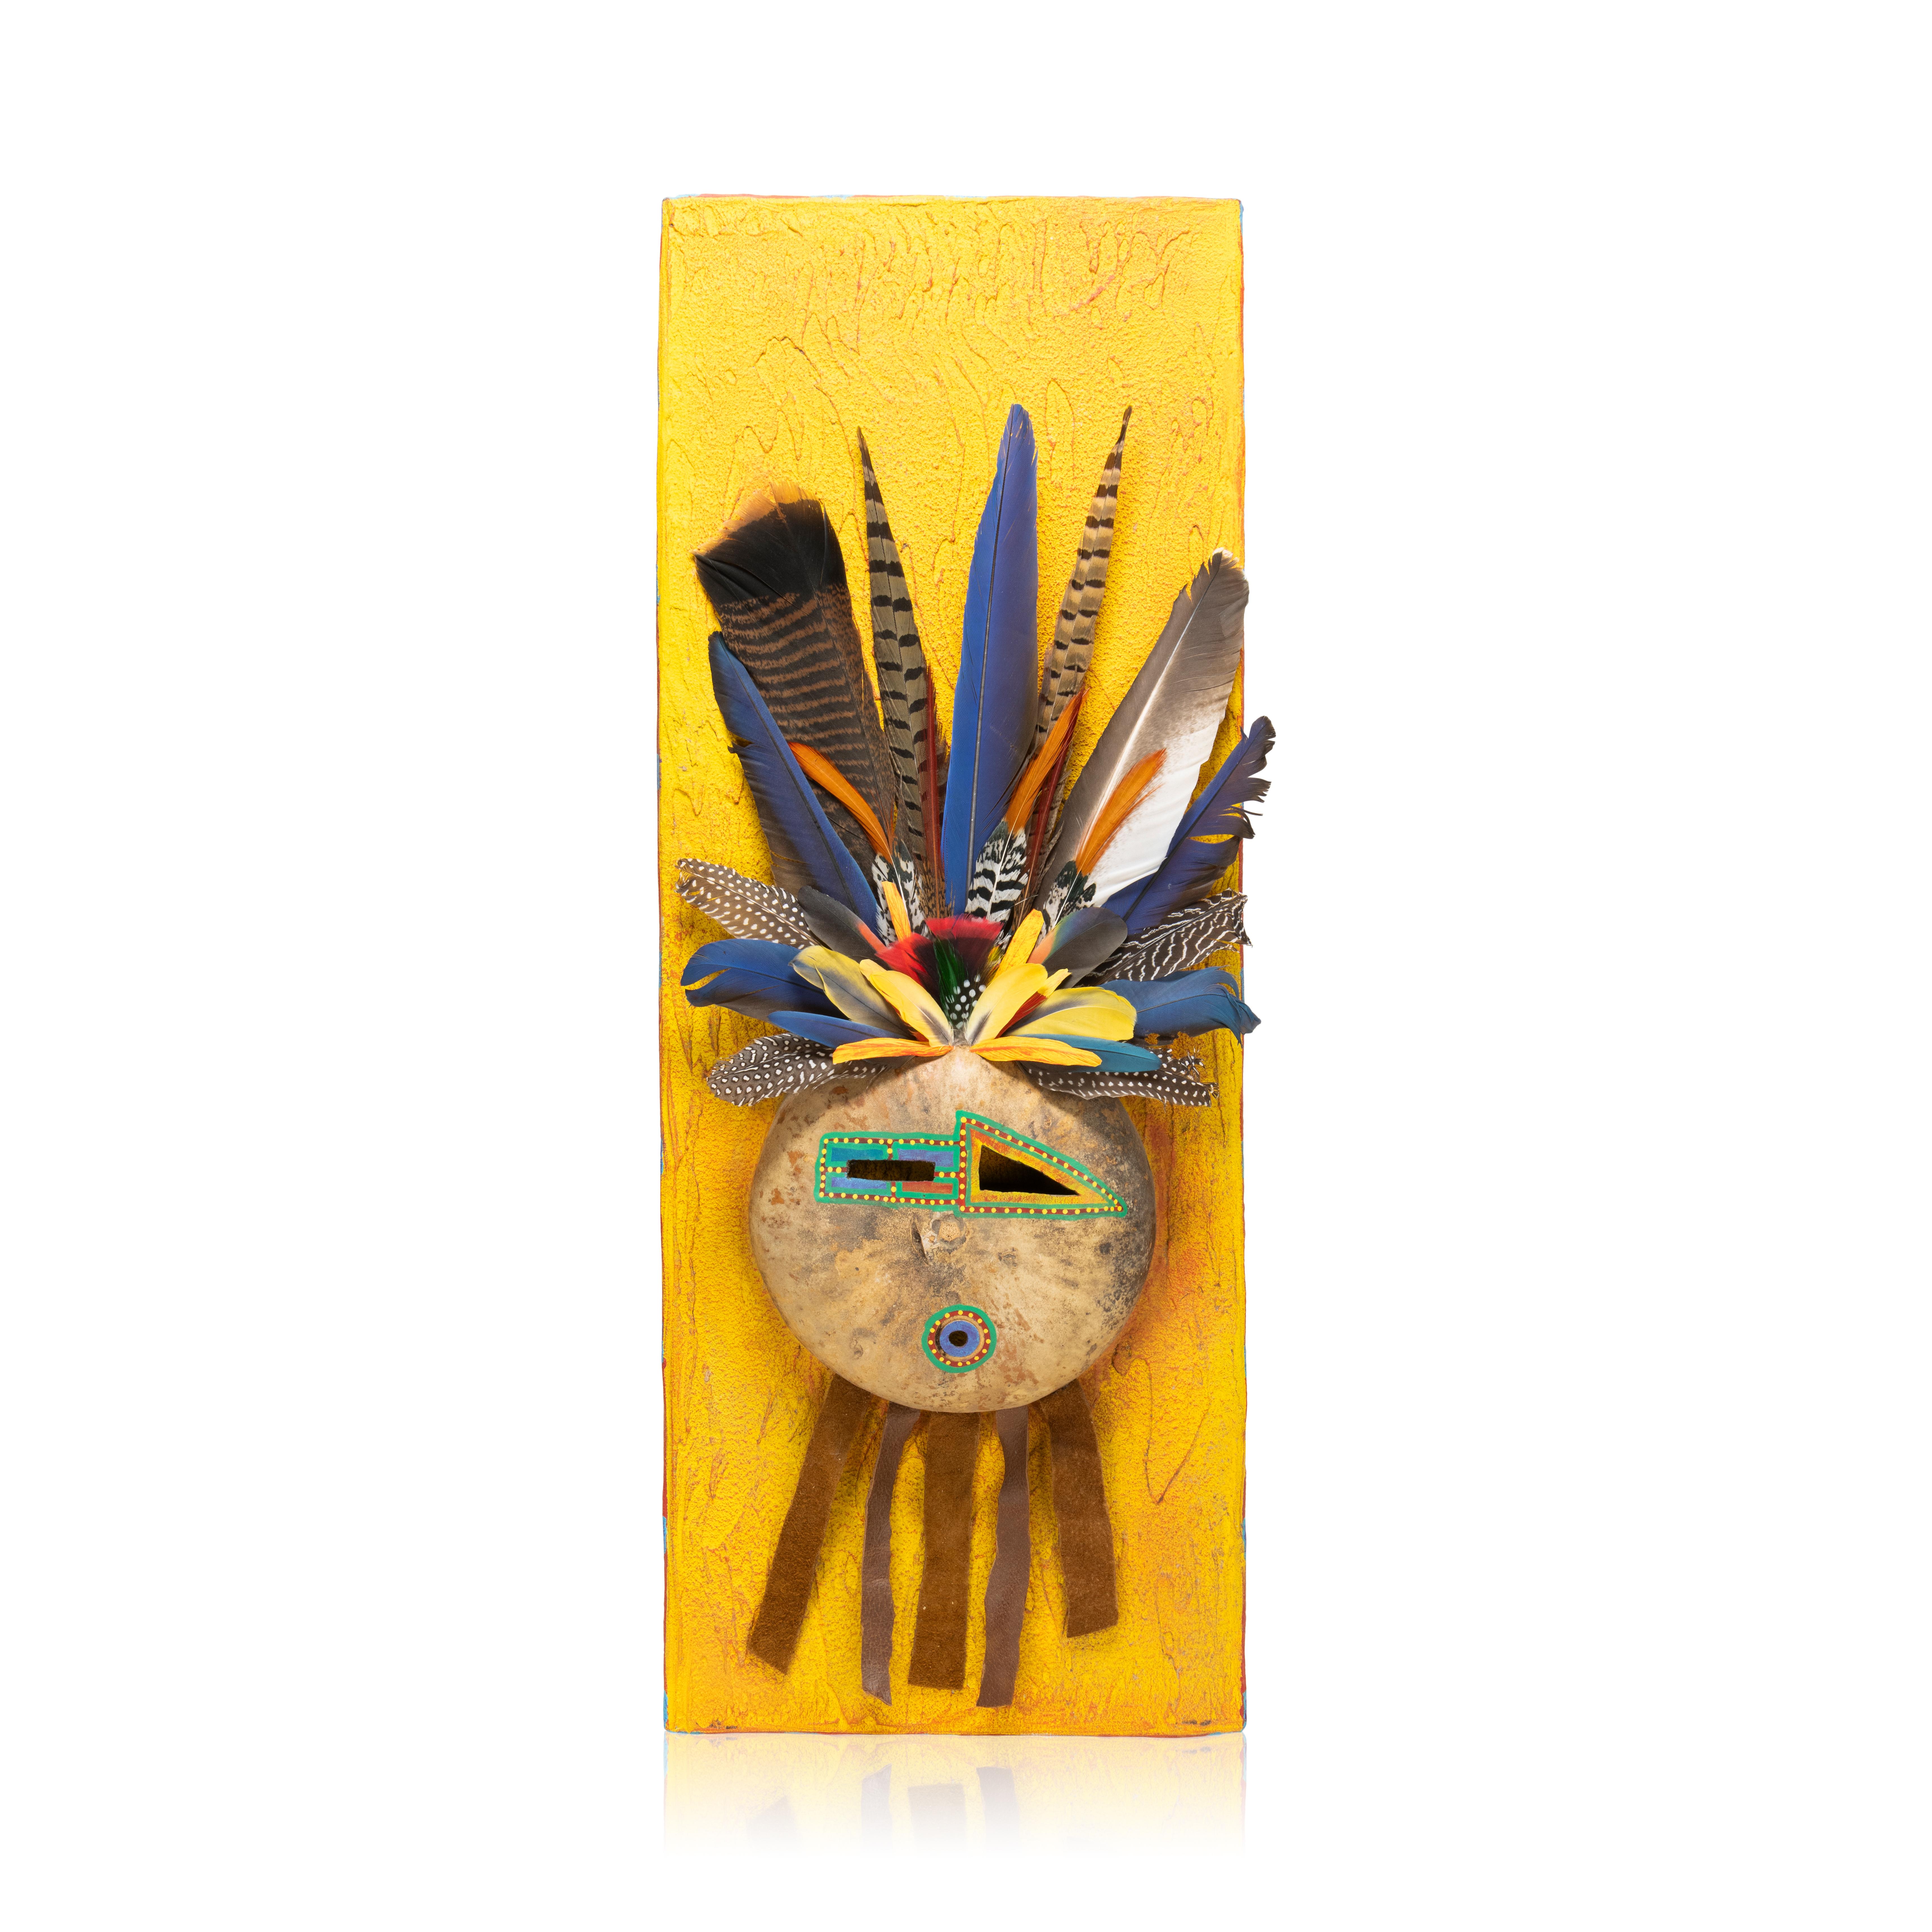 Masques de chaman sioux avec ajout de calebasses et de plumes par Doug Fountain. Doug incarne l'esprit et le pouvoir du grand Indien d'Amérique. Descendant direct du légendaire chef Sitting Bull, Doug et sa famille sont de fiers membres de la tribu